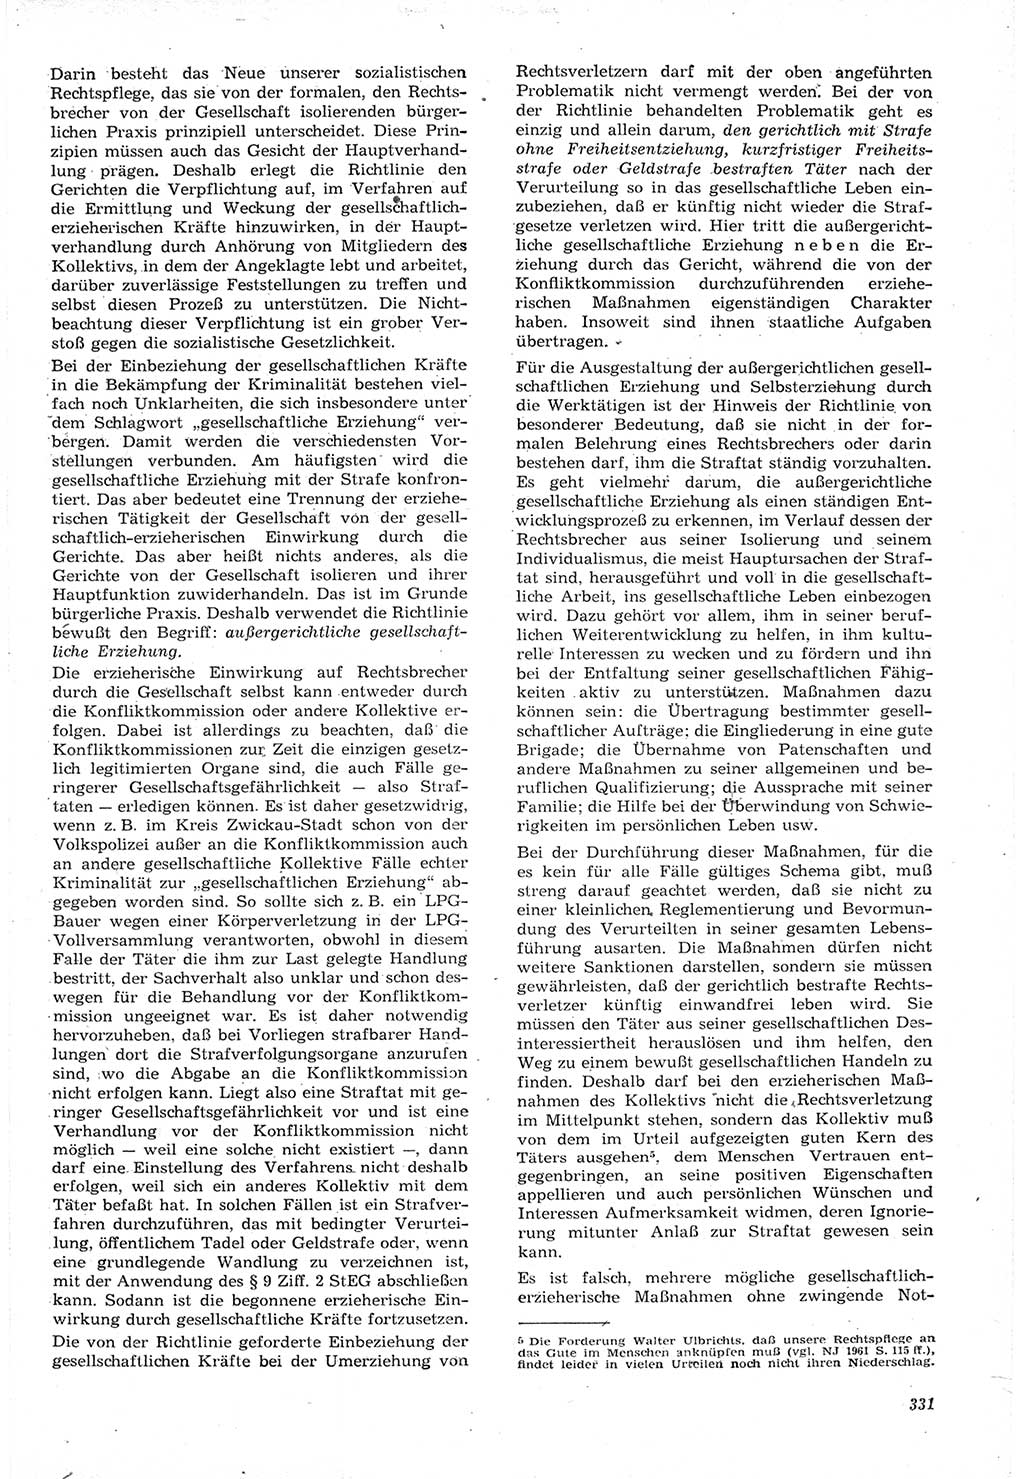 Neue Justiz (NJ), Zeitschrift für Recht und Rechtswissenschaft [Deutsche Demokratische Republik (DDR)], 15. Jahrgang 1961, Seite 331 (NJ DDR 1961, S. 331)